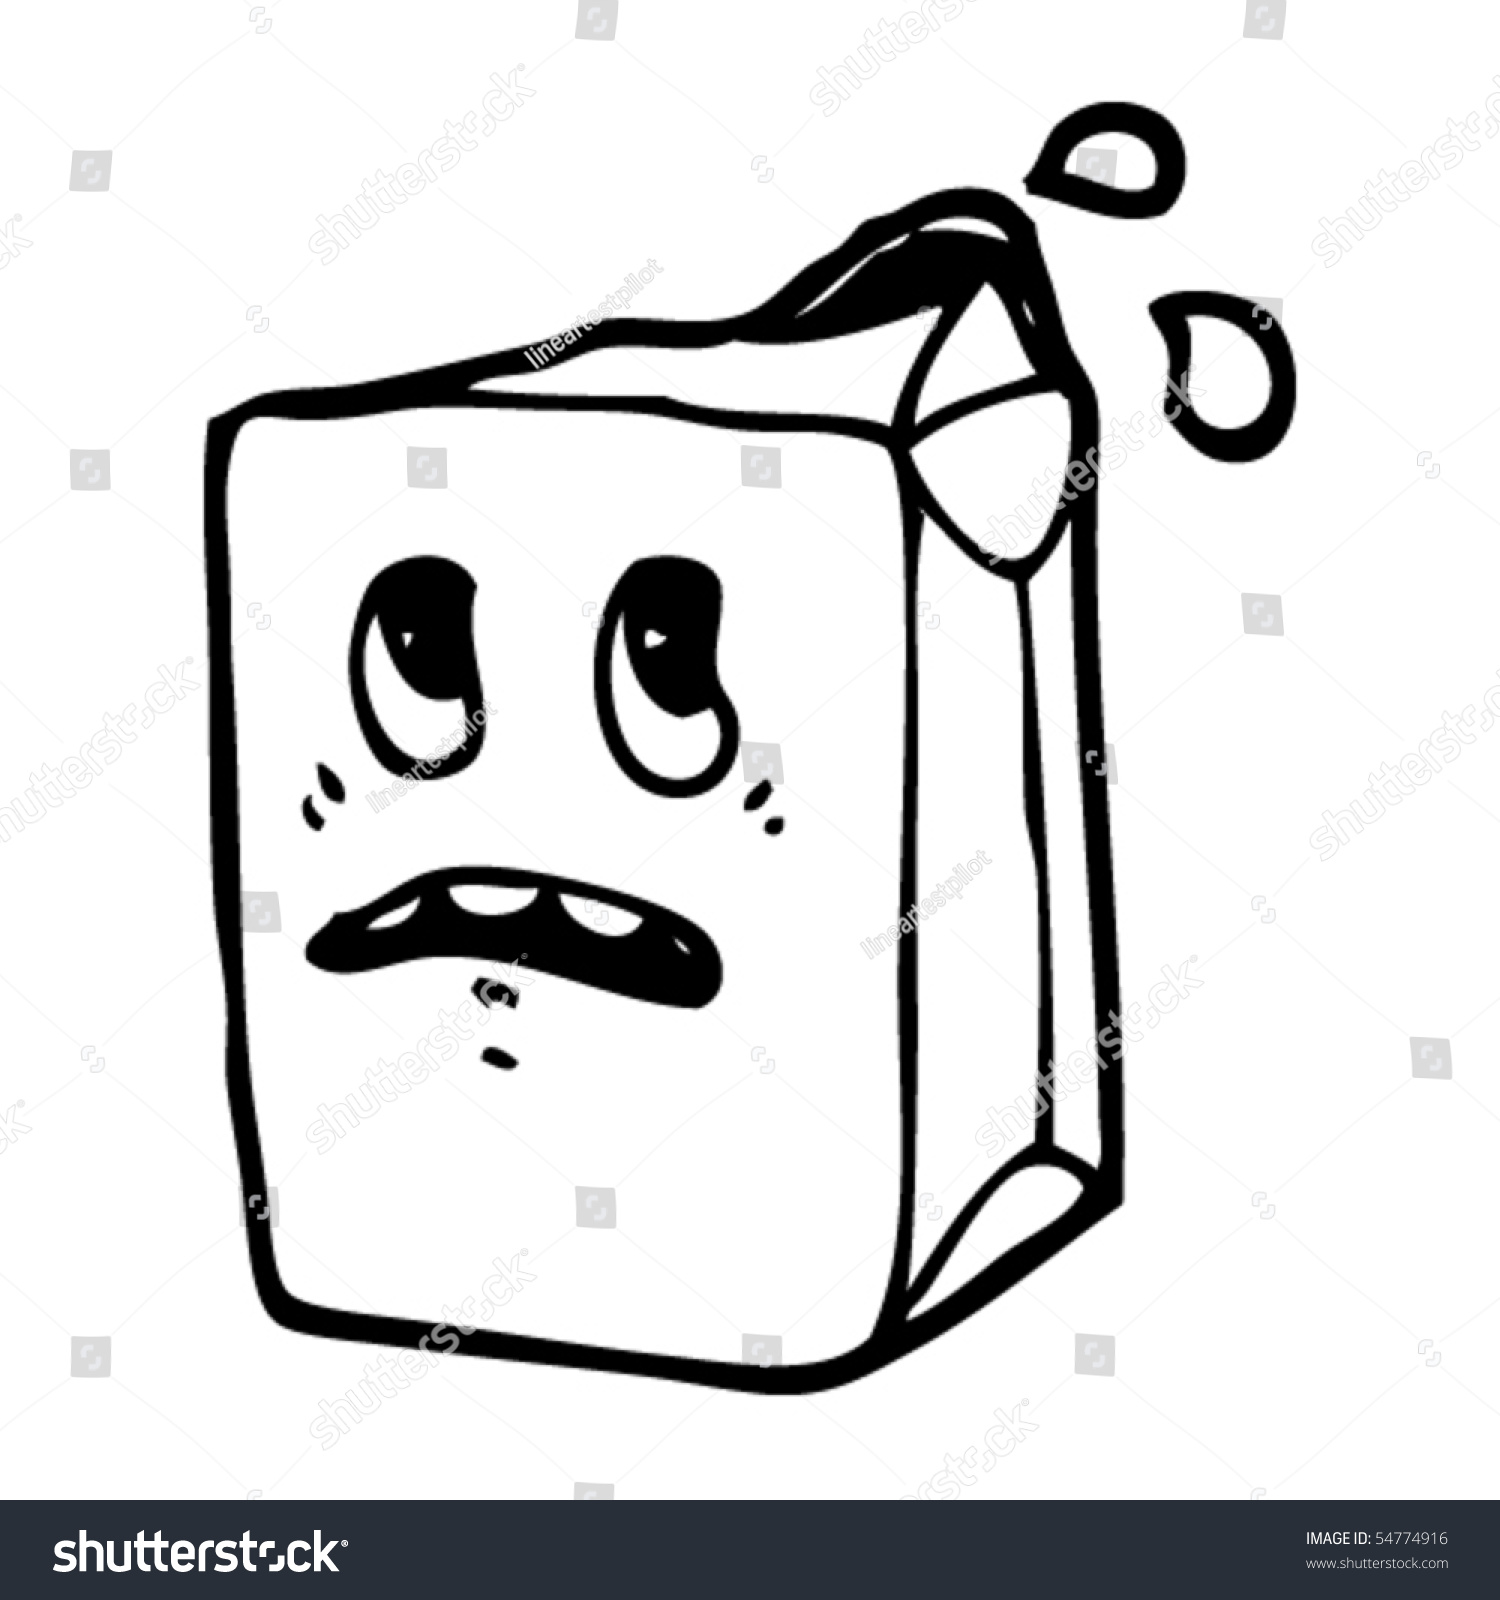 Milk Carton Cartoon Stock Vector Illustration 54774916 : Shutterstock